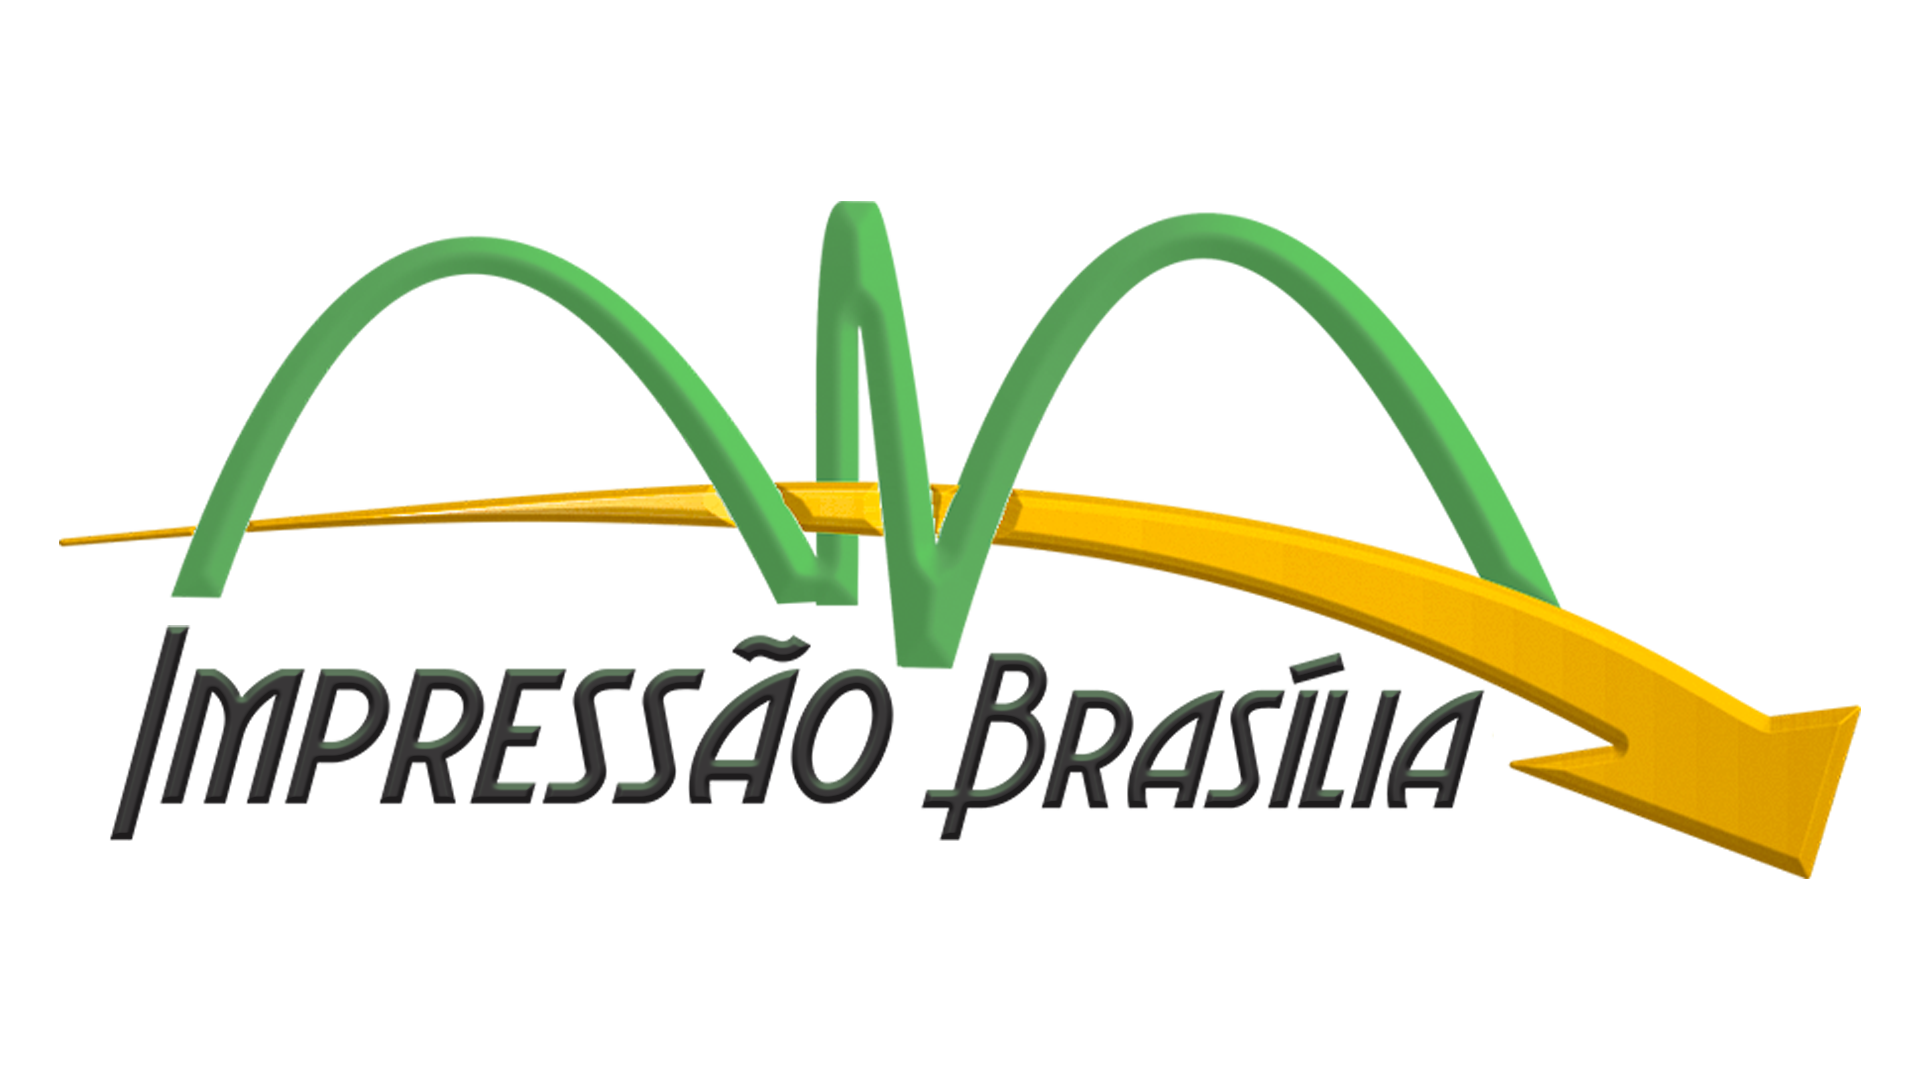 Impressão Brasilia - Especializada em produção de apostilas.